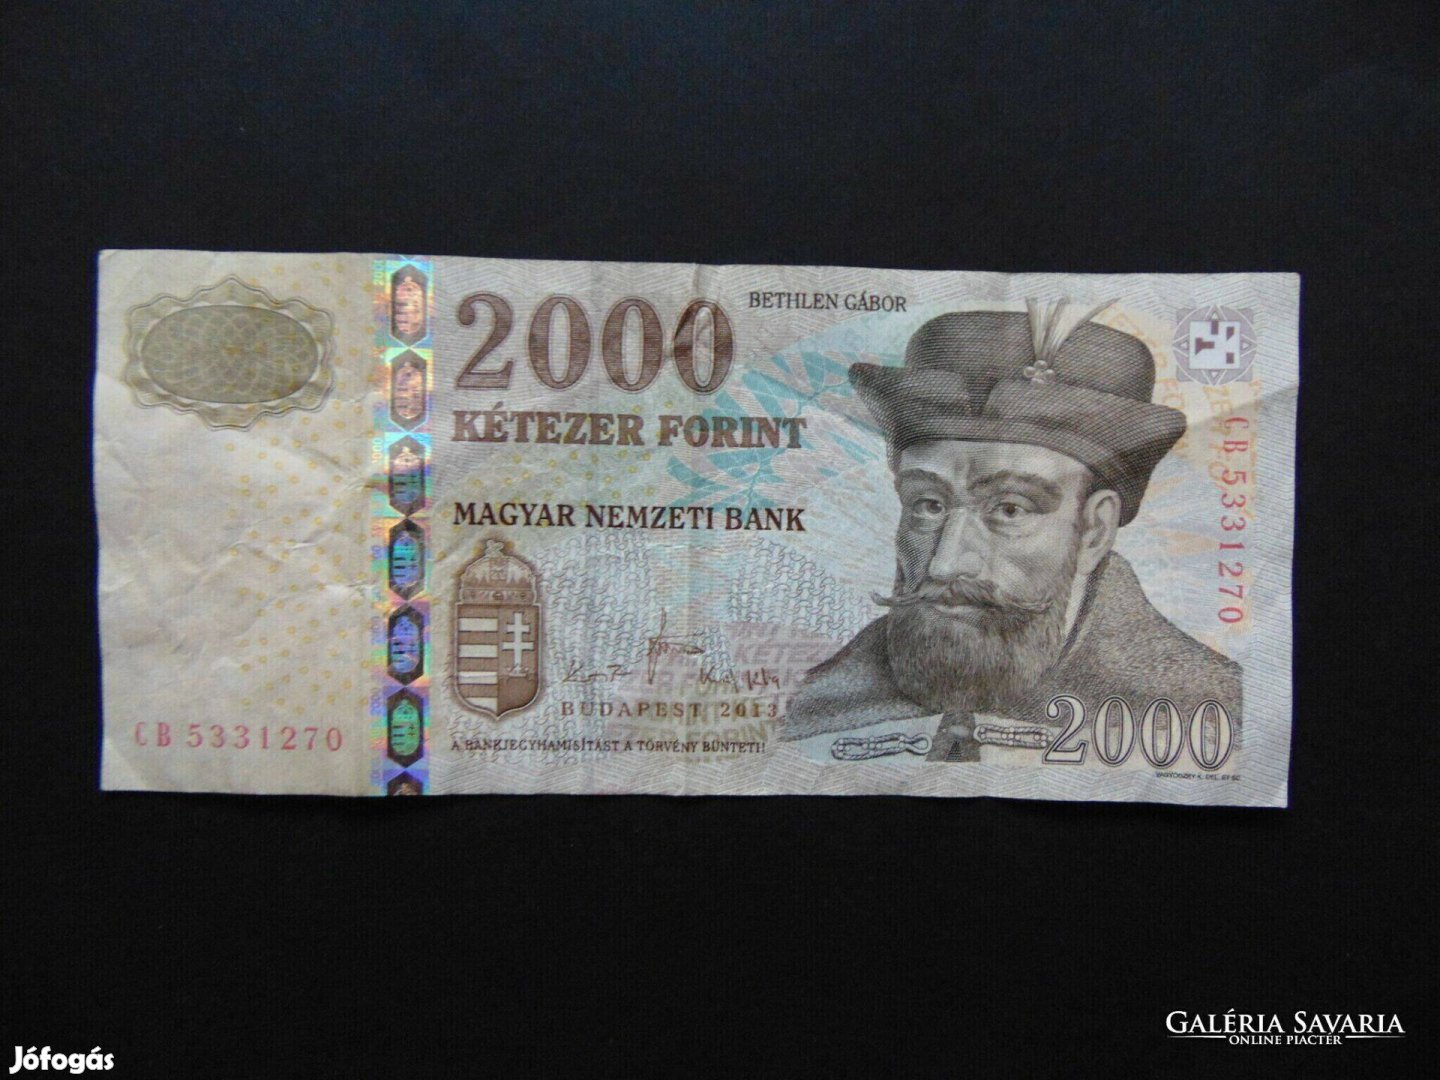 Bethlen Gábor 2000 forint 2013 CB